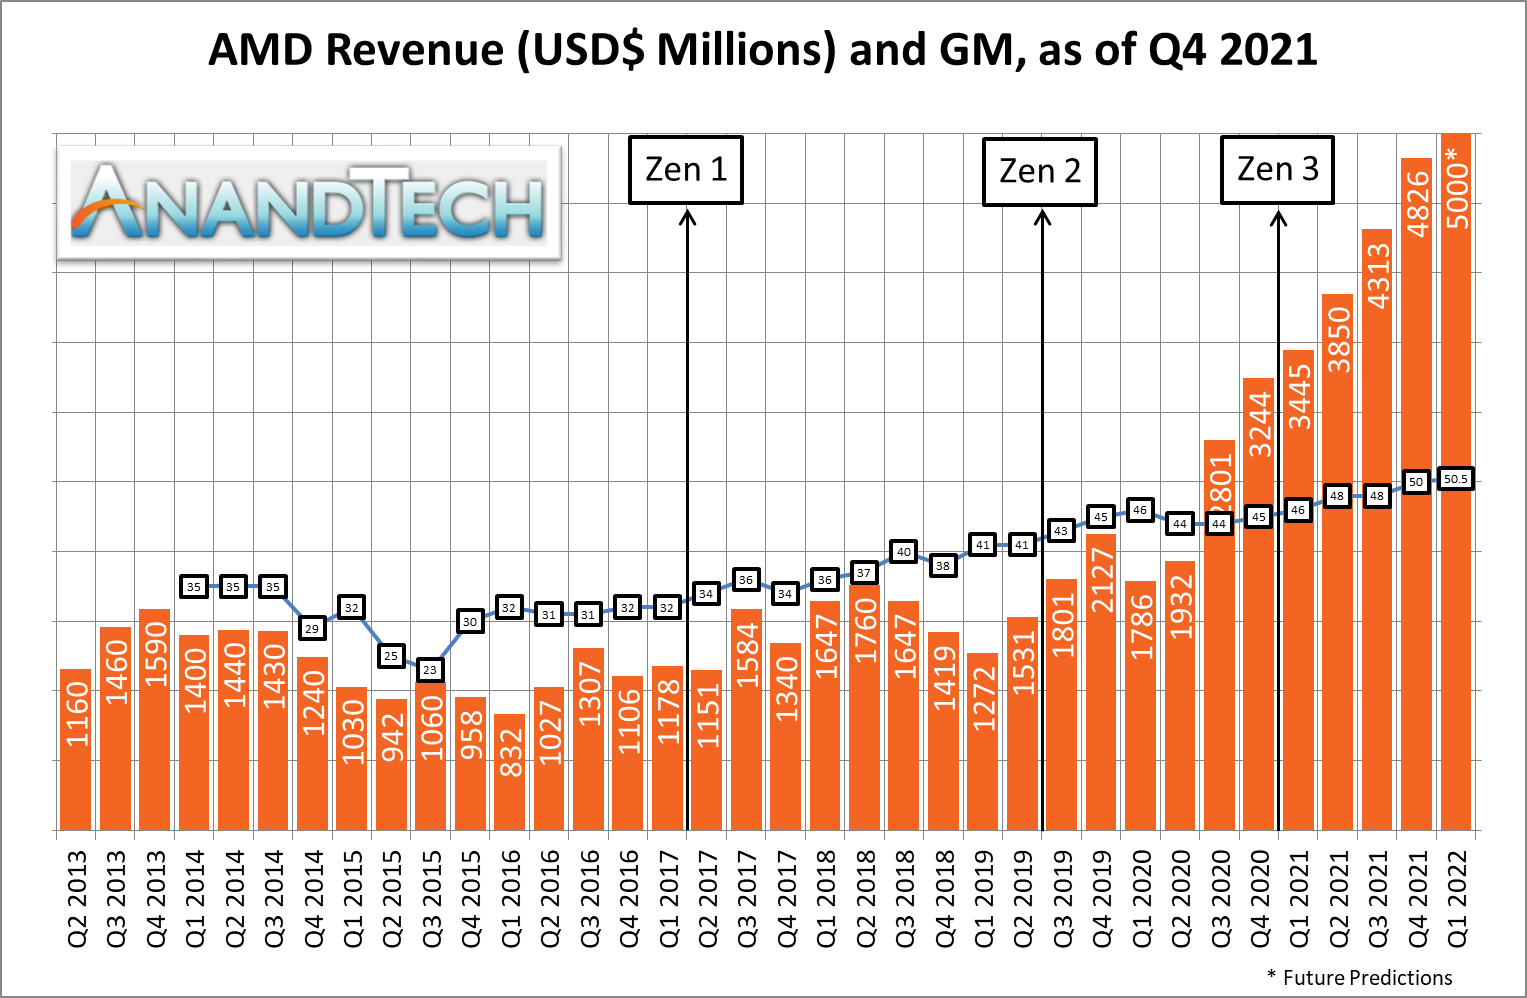 Изменения минфин 2021. Выручка AMD. Финансы 2021 год. Revenue graph. Big 4 Financial 2021.